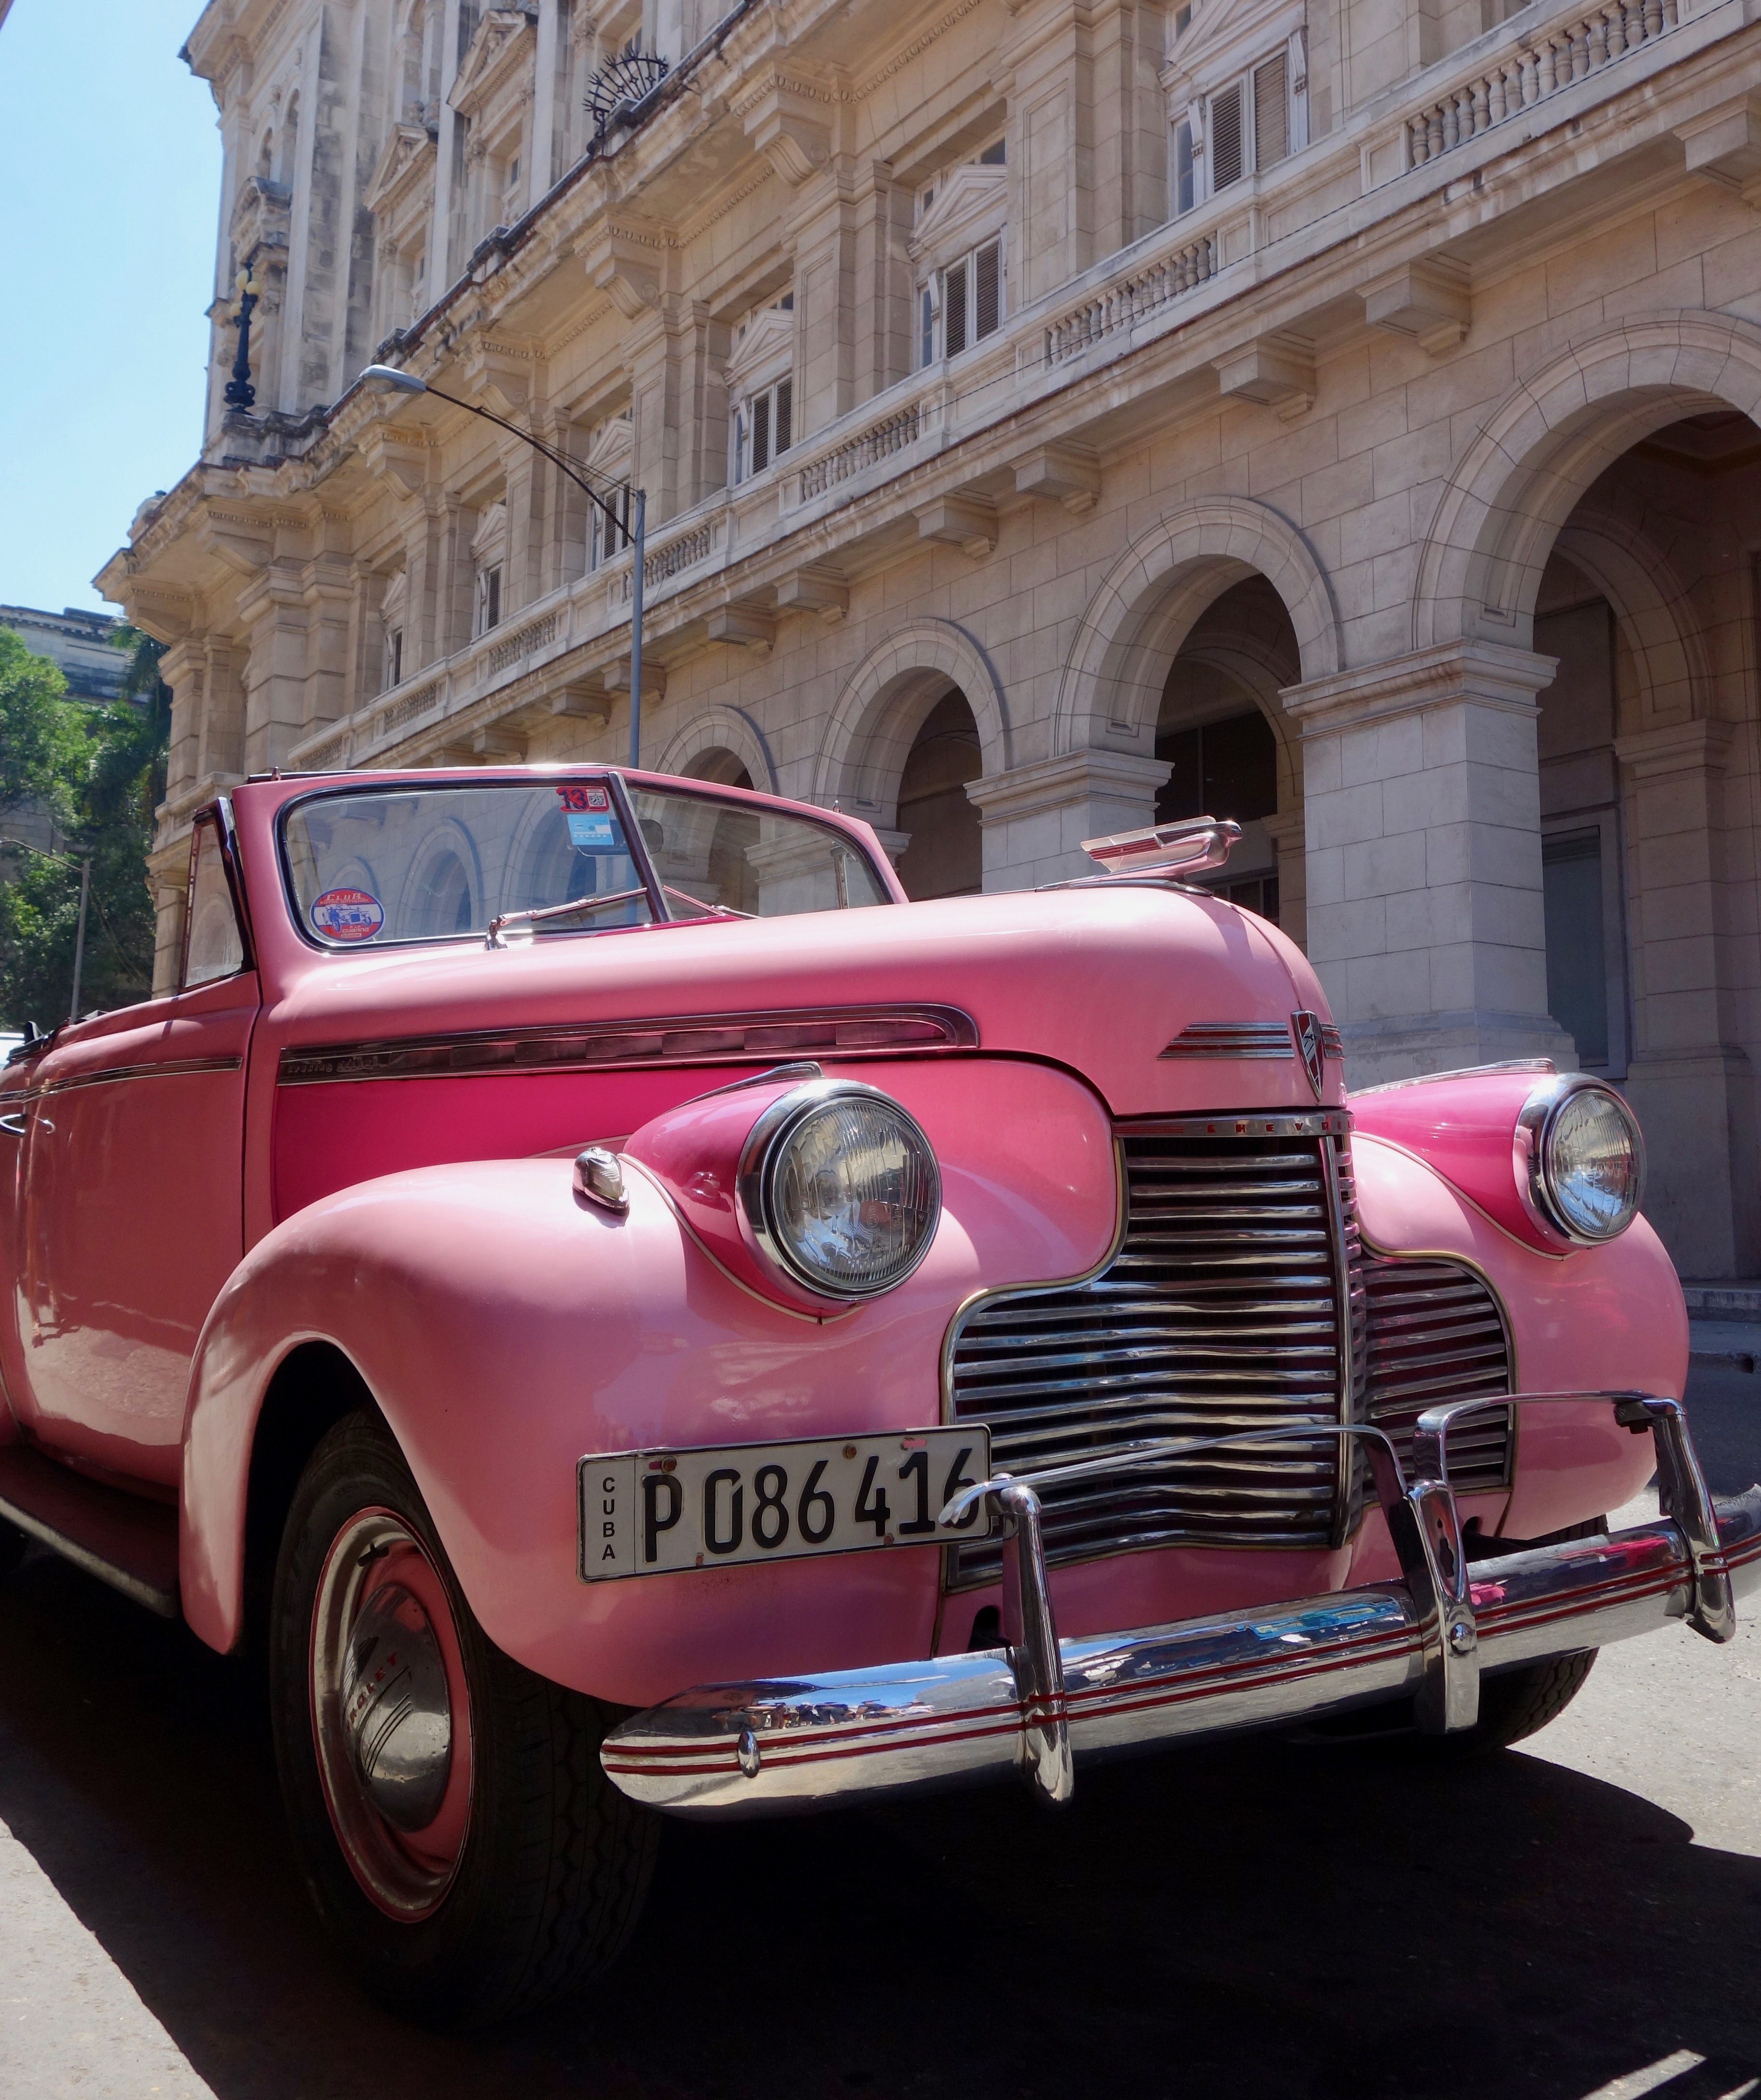 American Classic Car in Havana